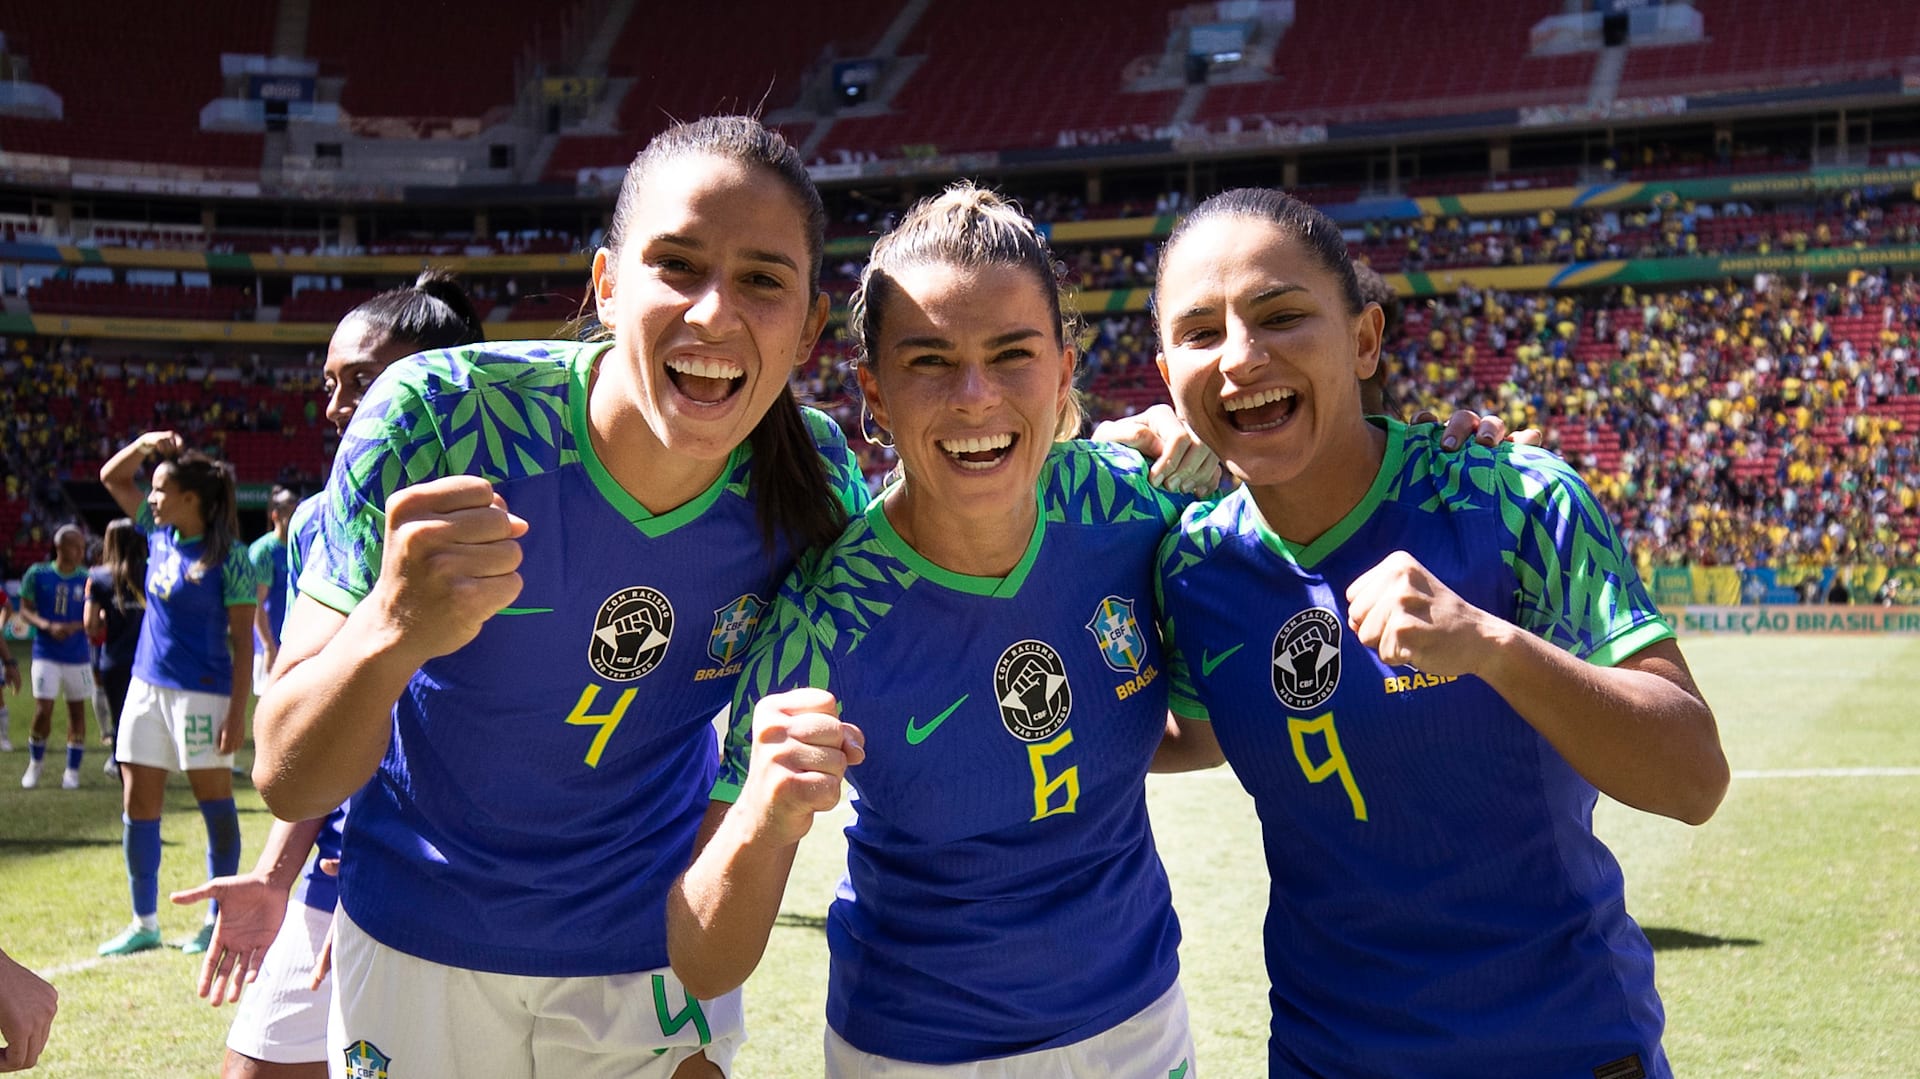 Seleção Feminina de Futebol on X: Confira a lista completa das